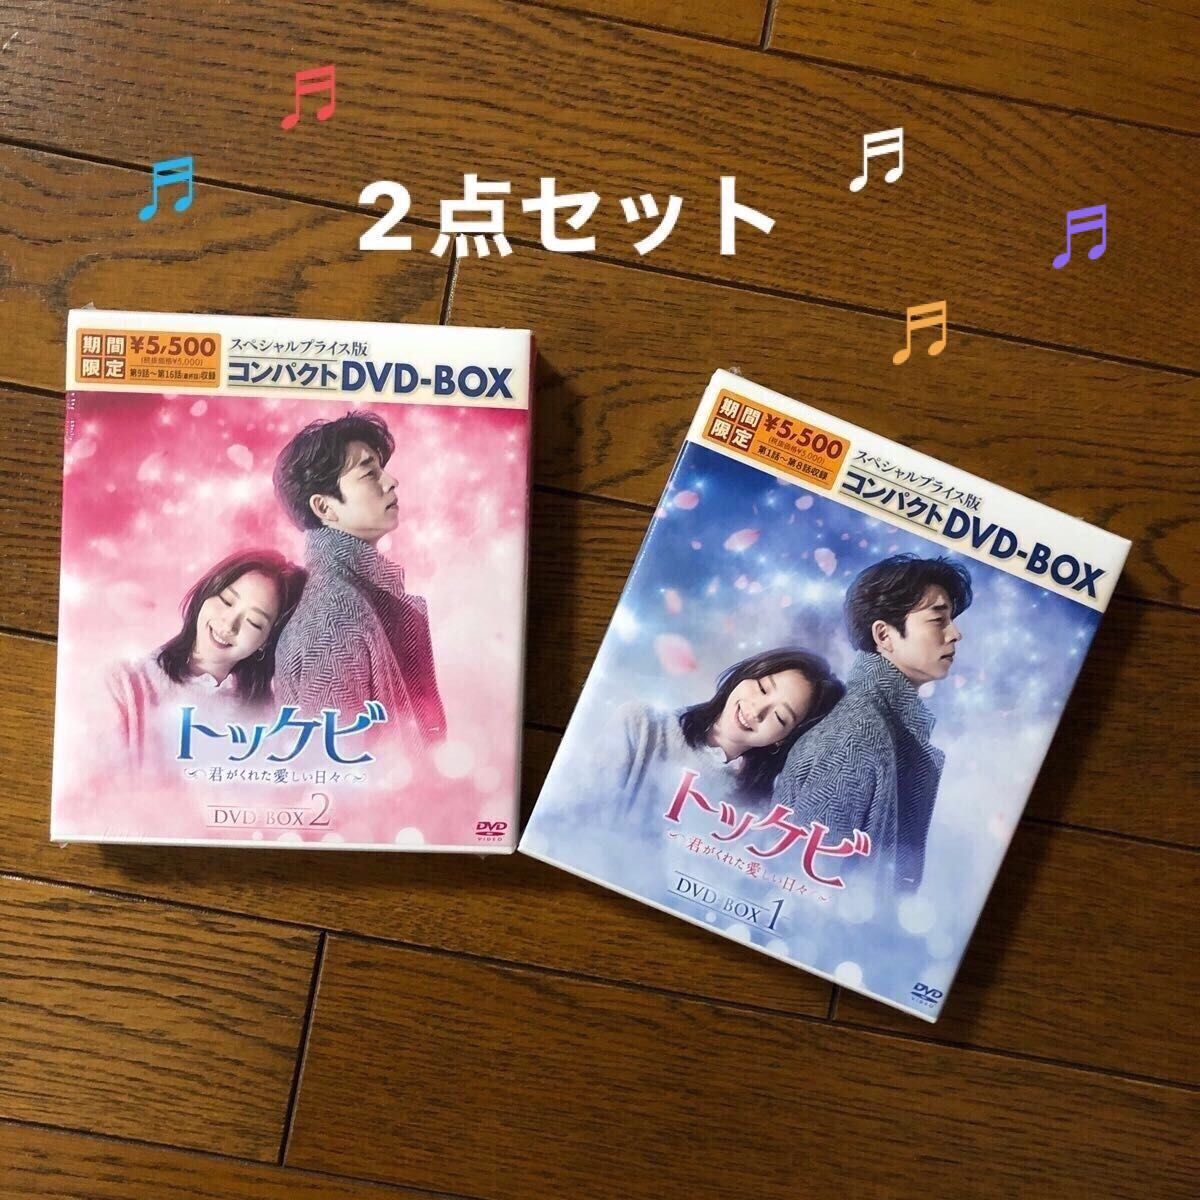 トッケビ~君がくれた愛しい日々~ DVD-BOX1とBOX2 送料無料｜PayPayフリマ